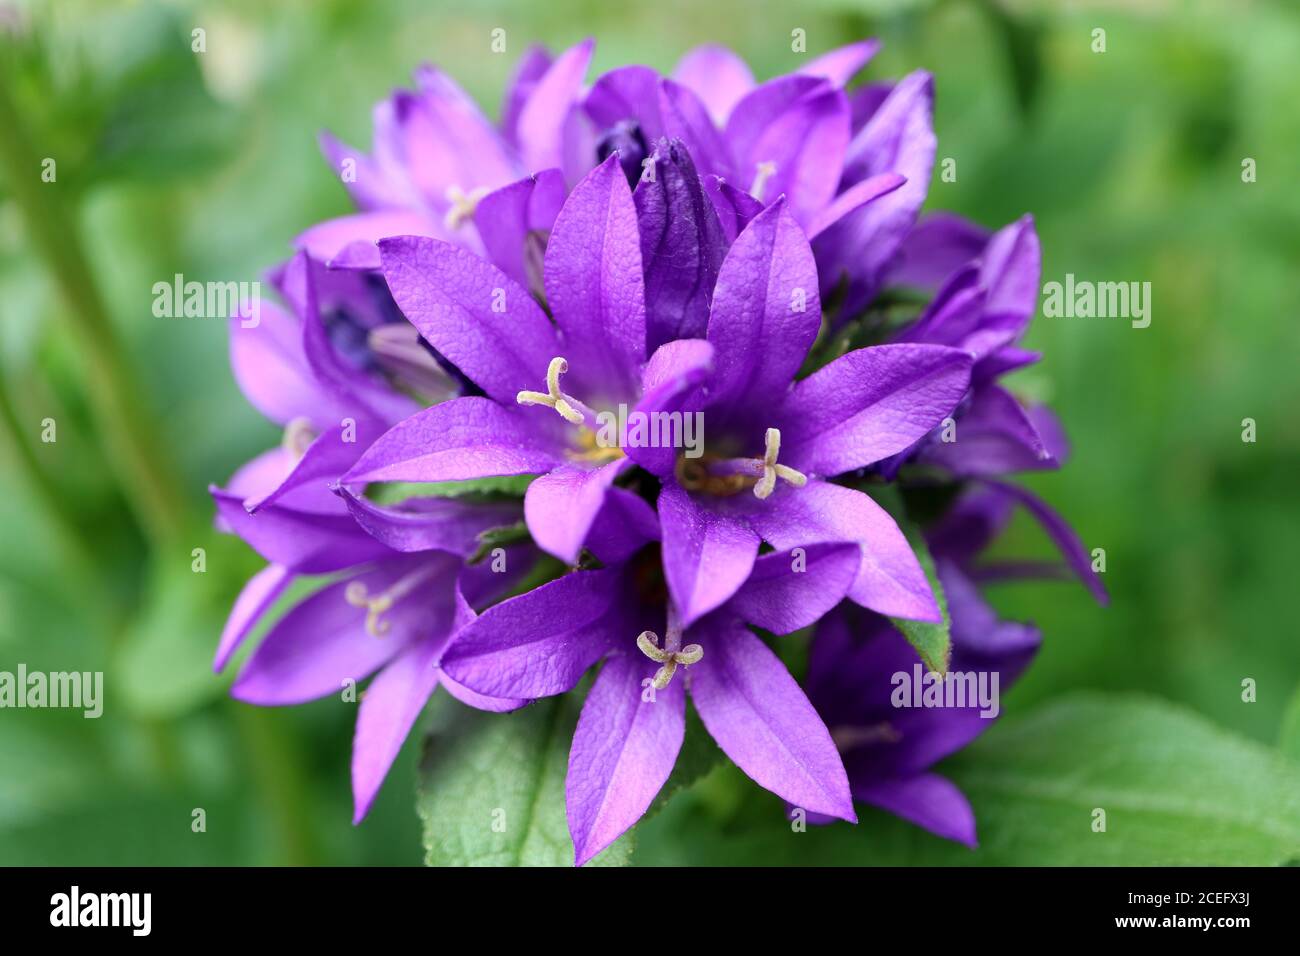 Flores de campana púrpura en el jardín, Campanula púrpura glomerata, flores de campana púrpura macro, Belleza en la naturaleza, imagen de stock Foto de stock